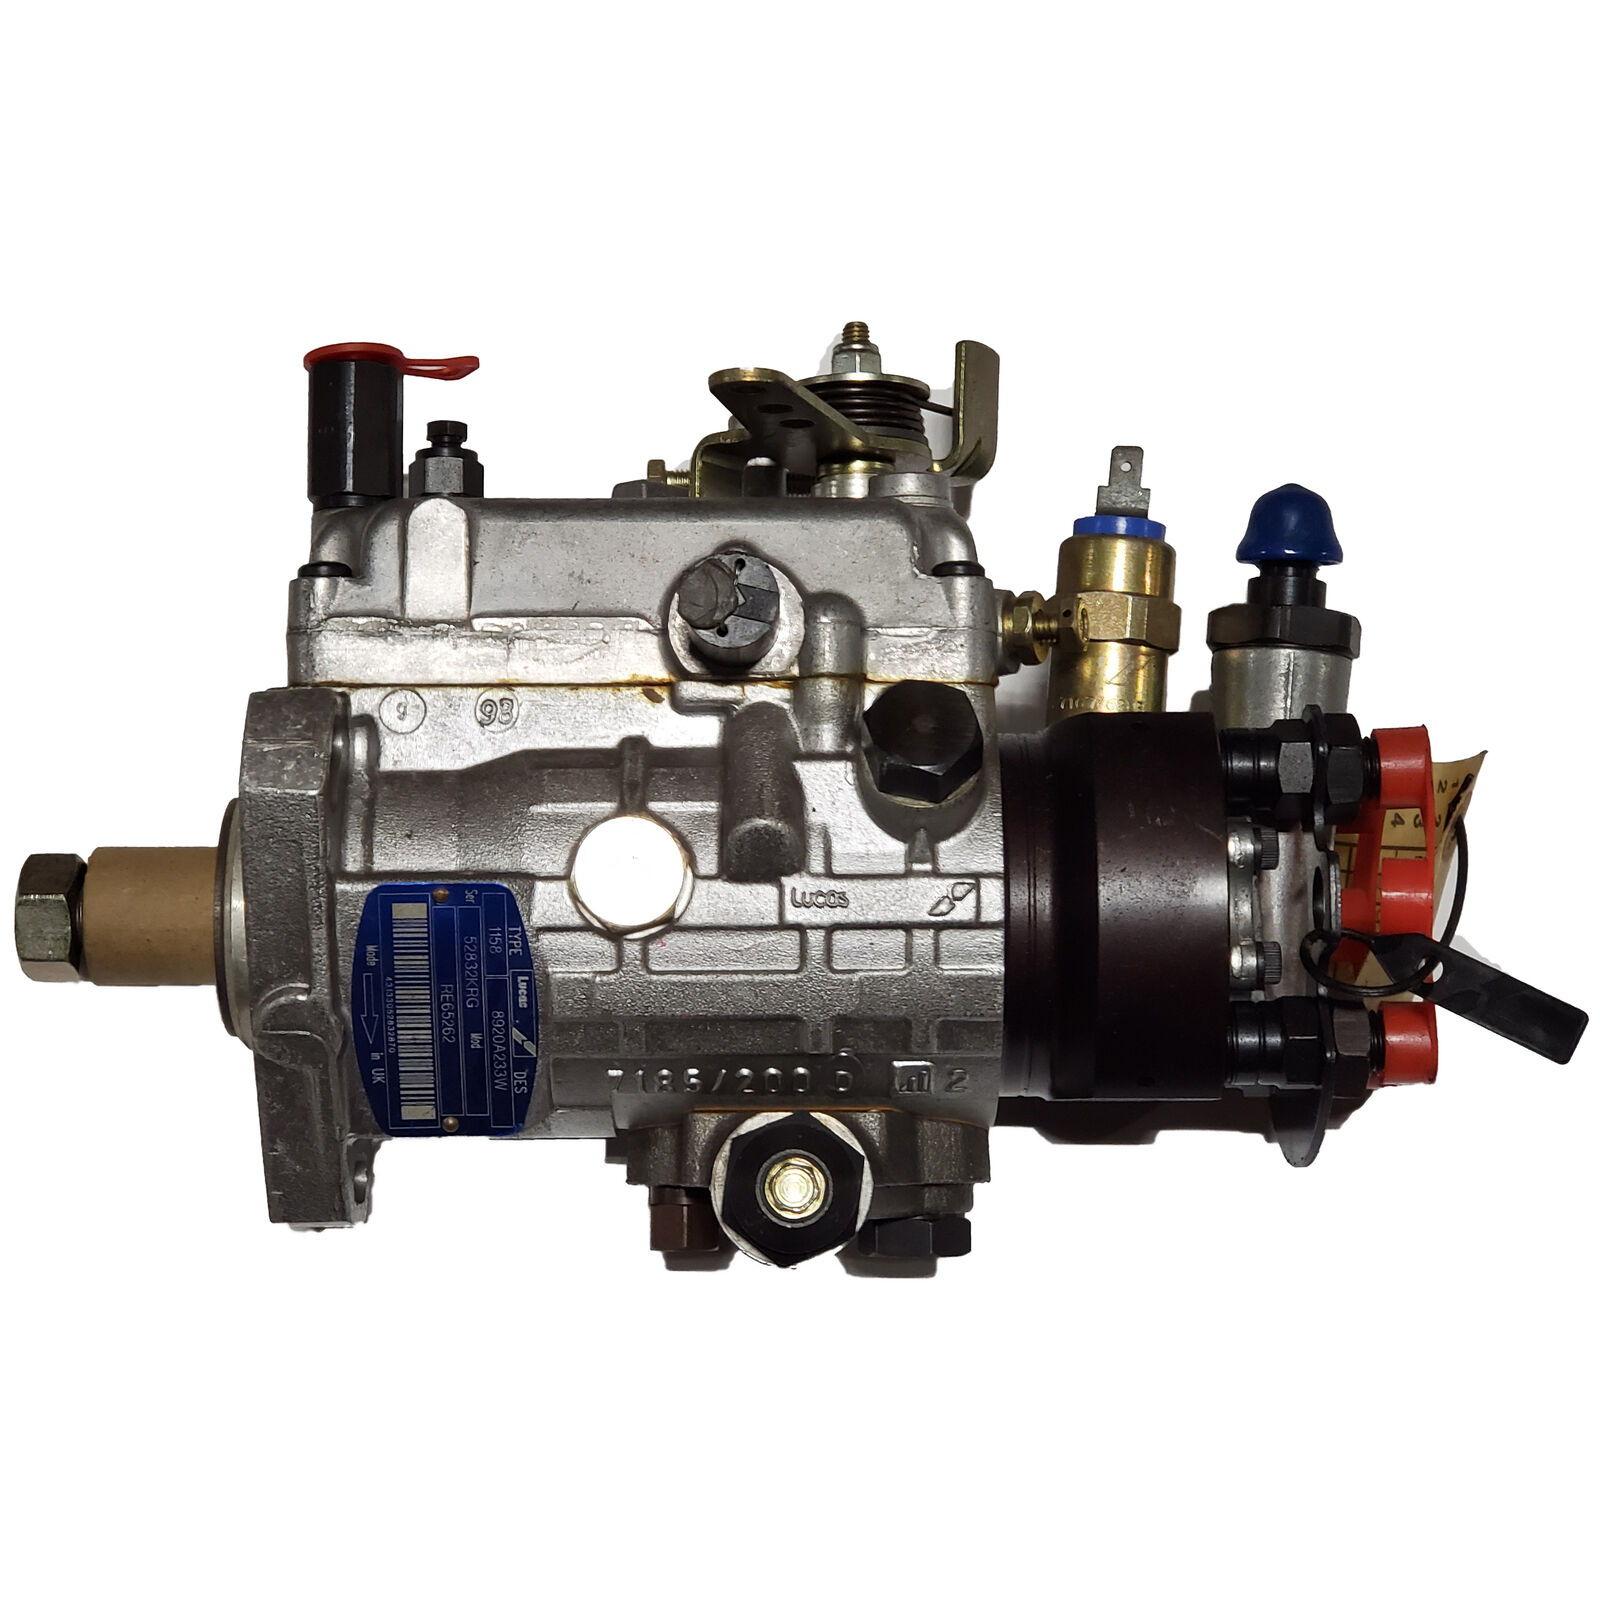  Lucas Type 1272 DES Injection Pump Fits JCB Perkins Diesel Engine 8920A342T 